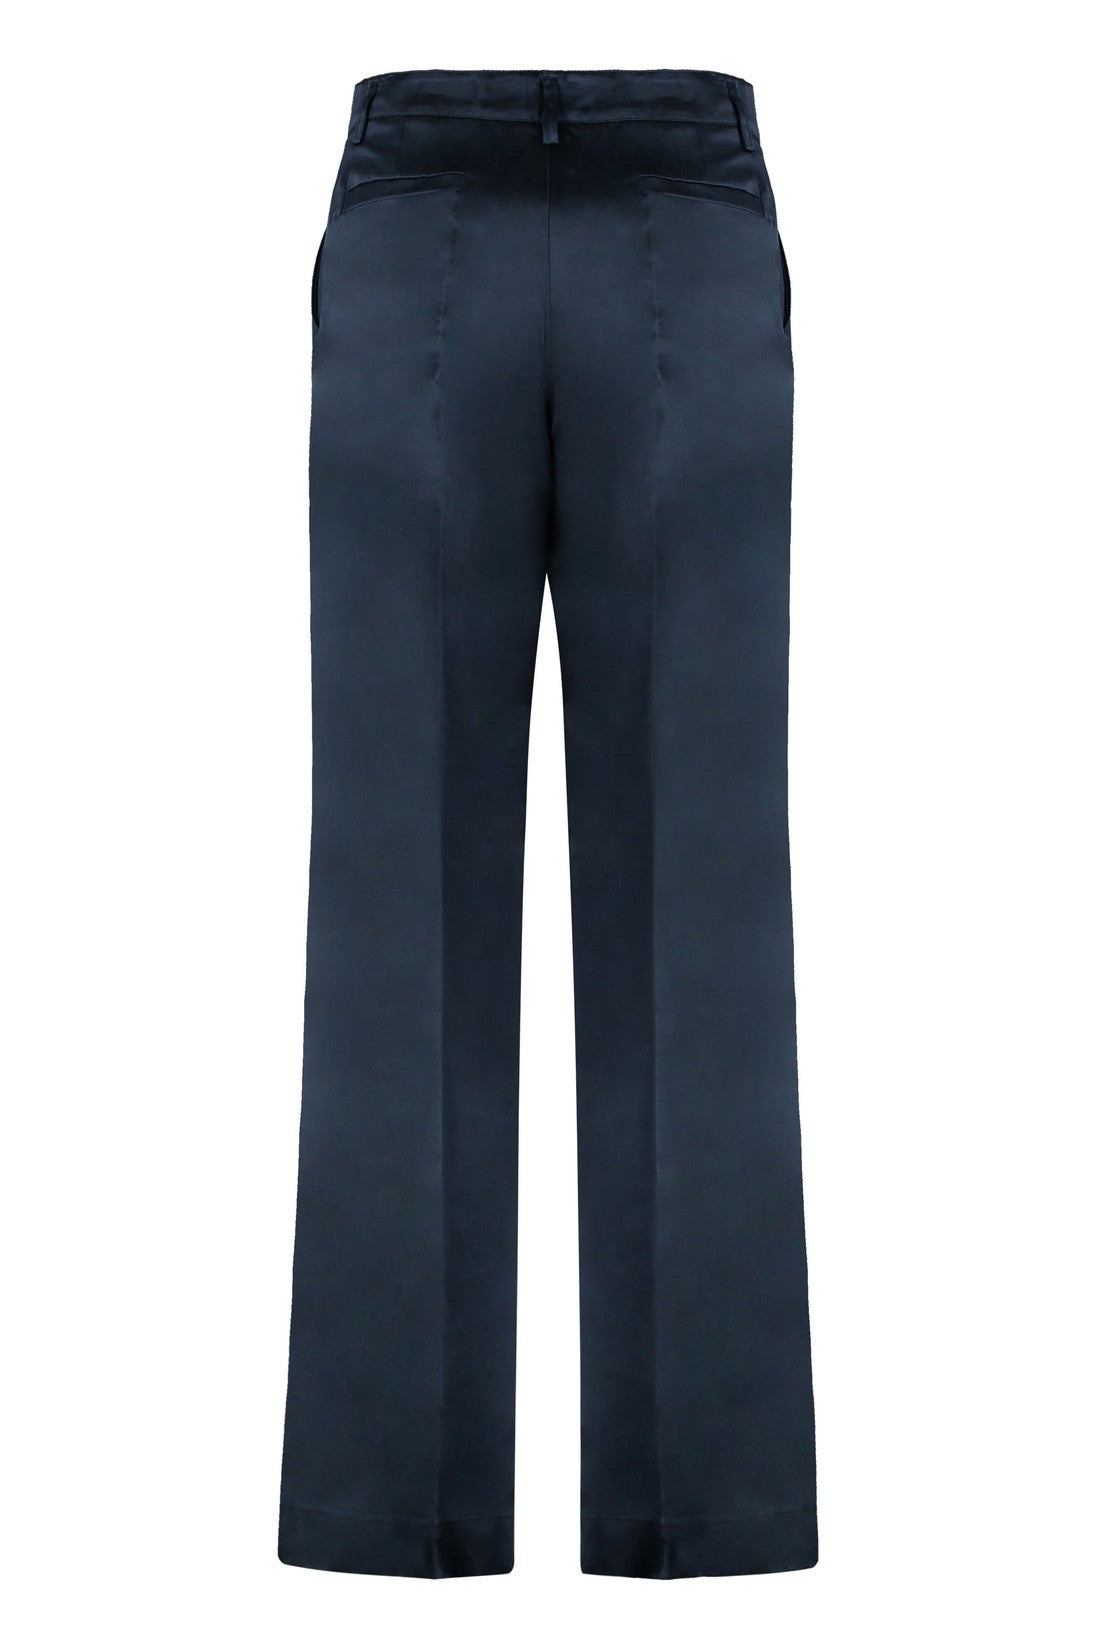 Parosh-OUTLET-SALE-Satin trousers-ARCHIVIST